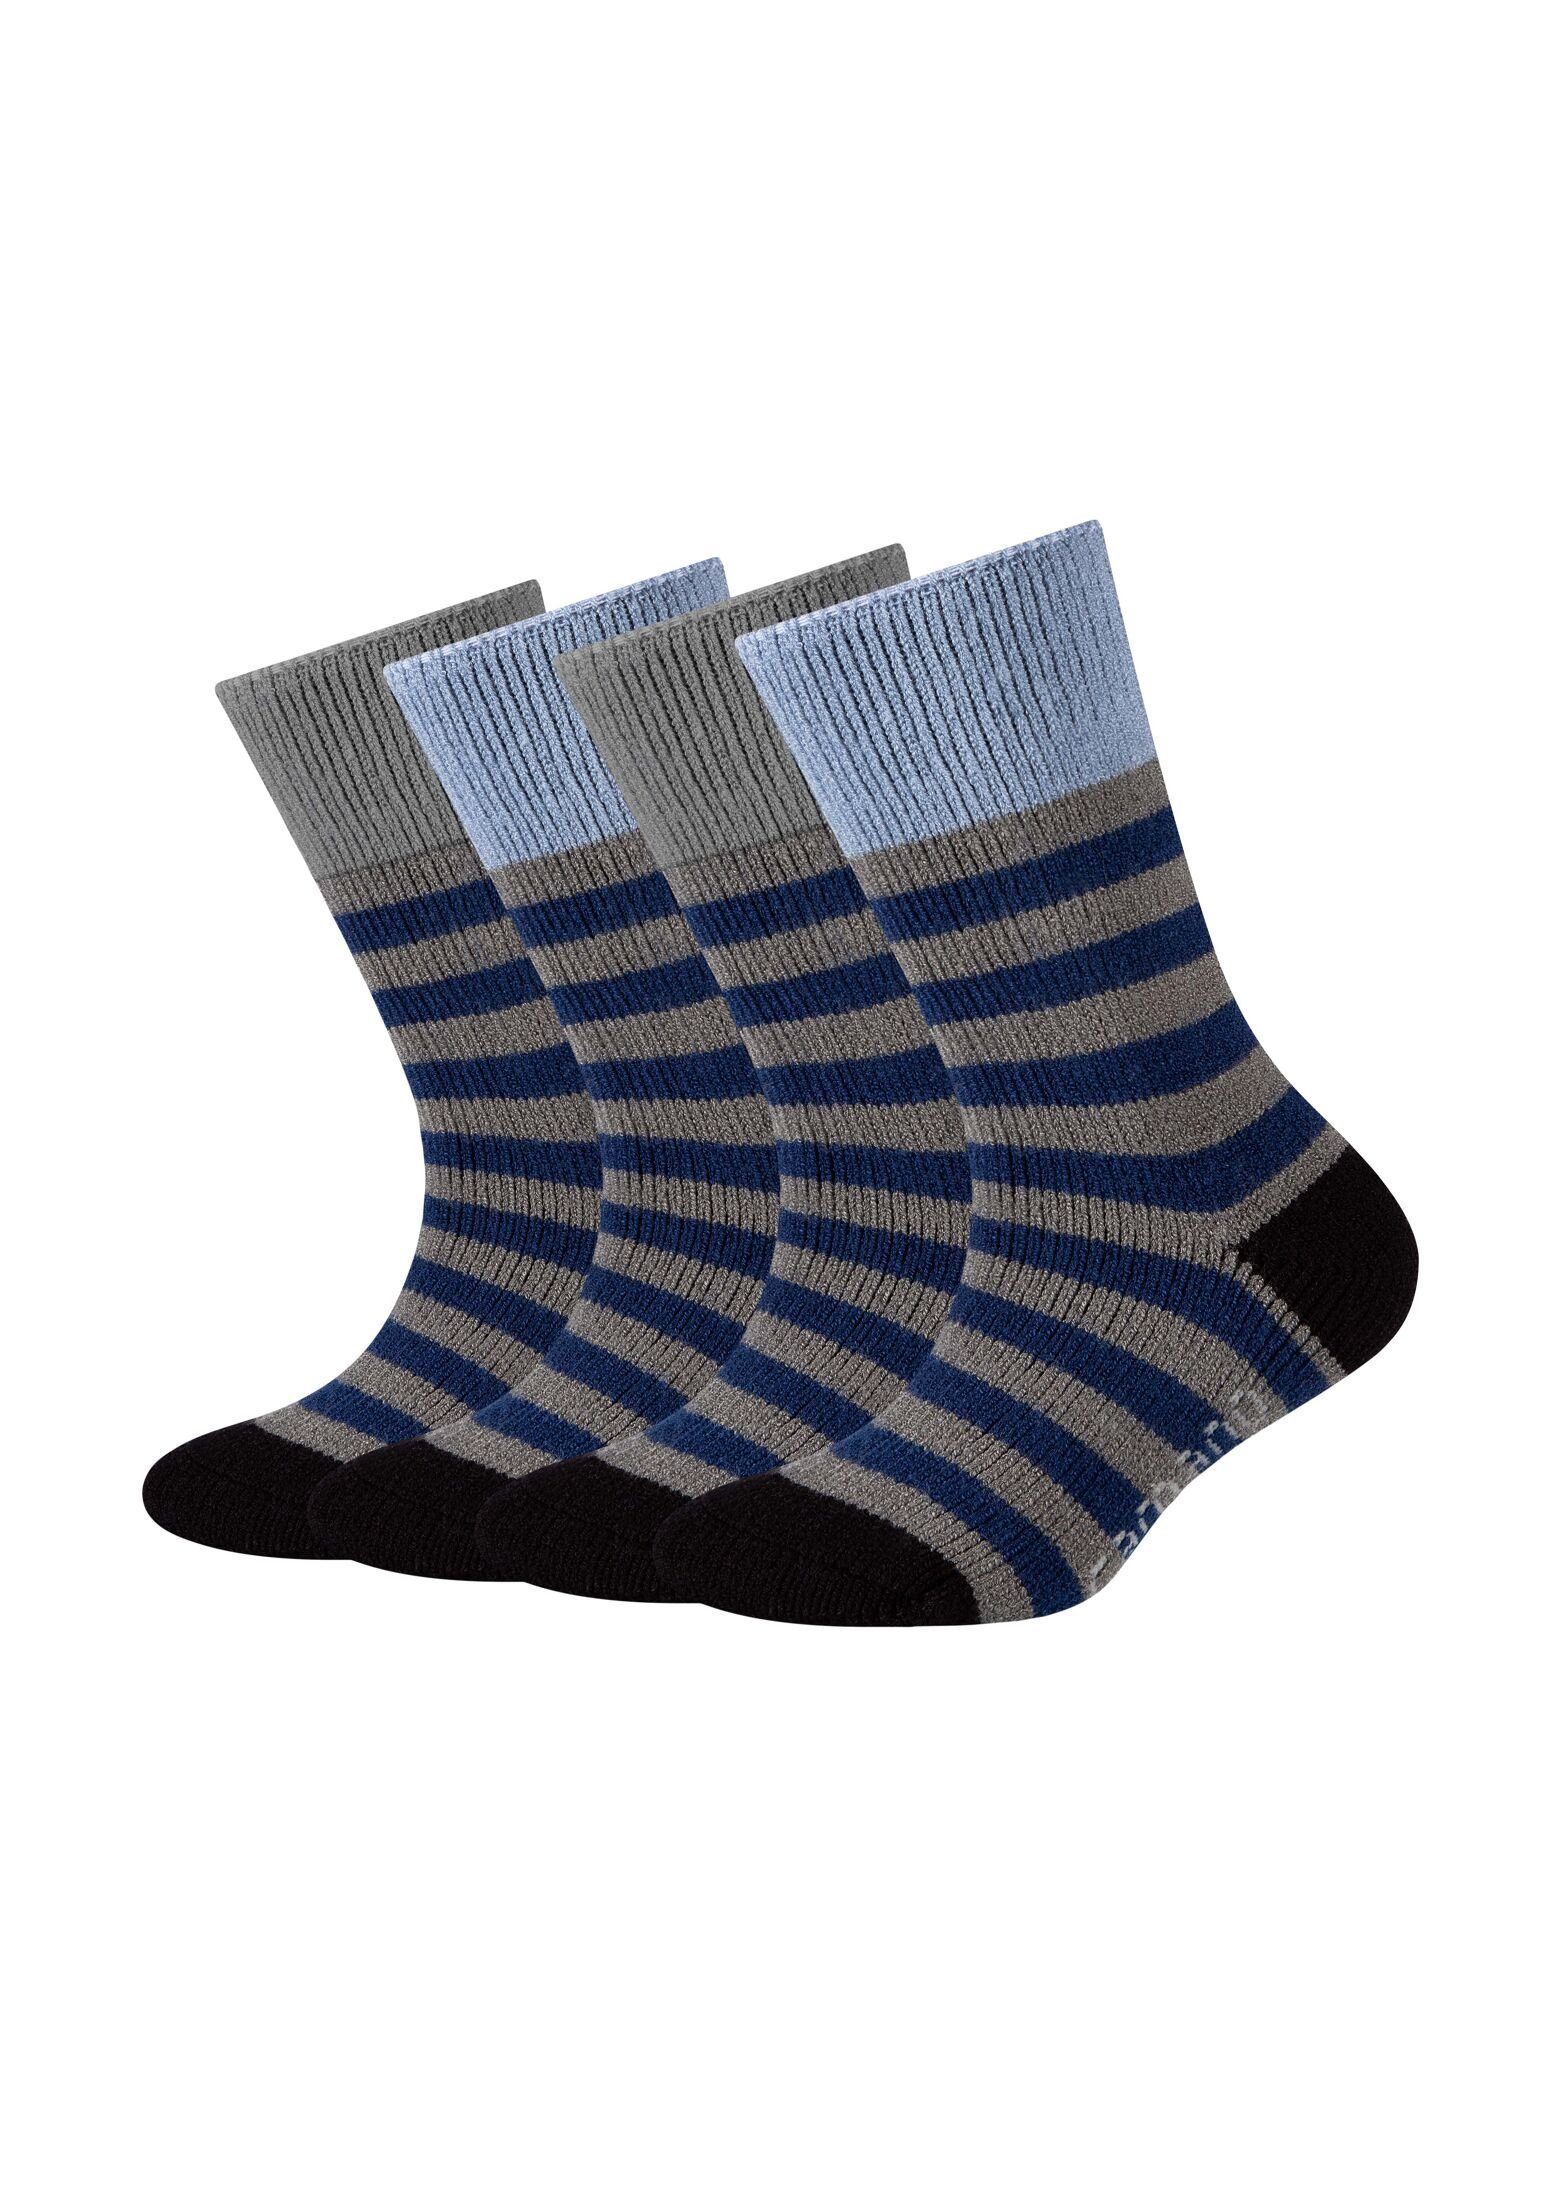 Camano Socken Socken 4er Pack dark grey melange | Lange Socken